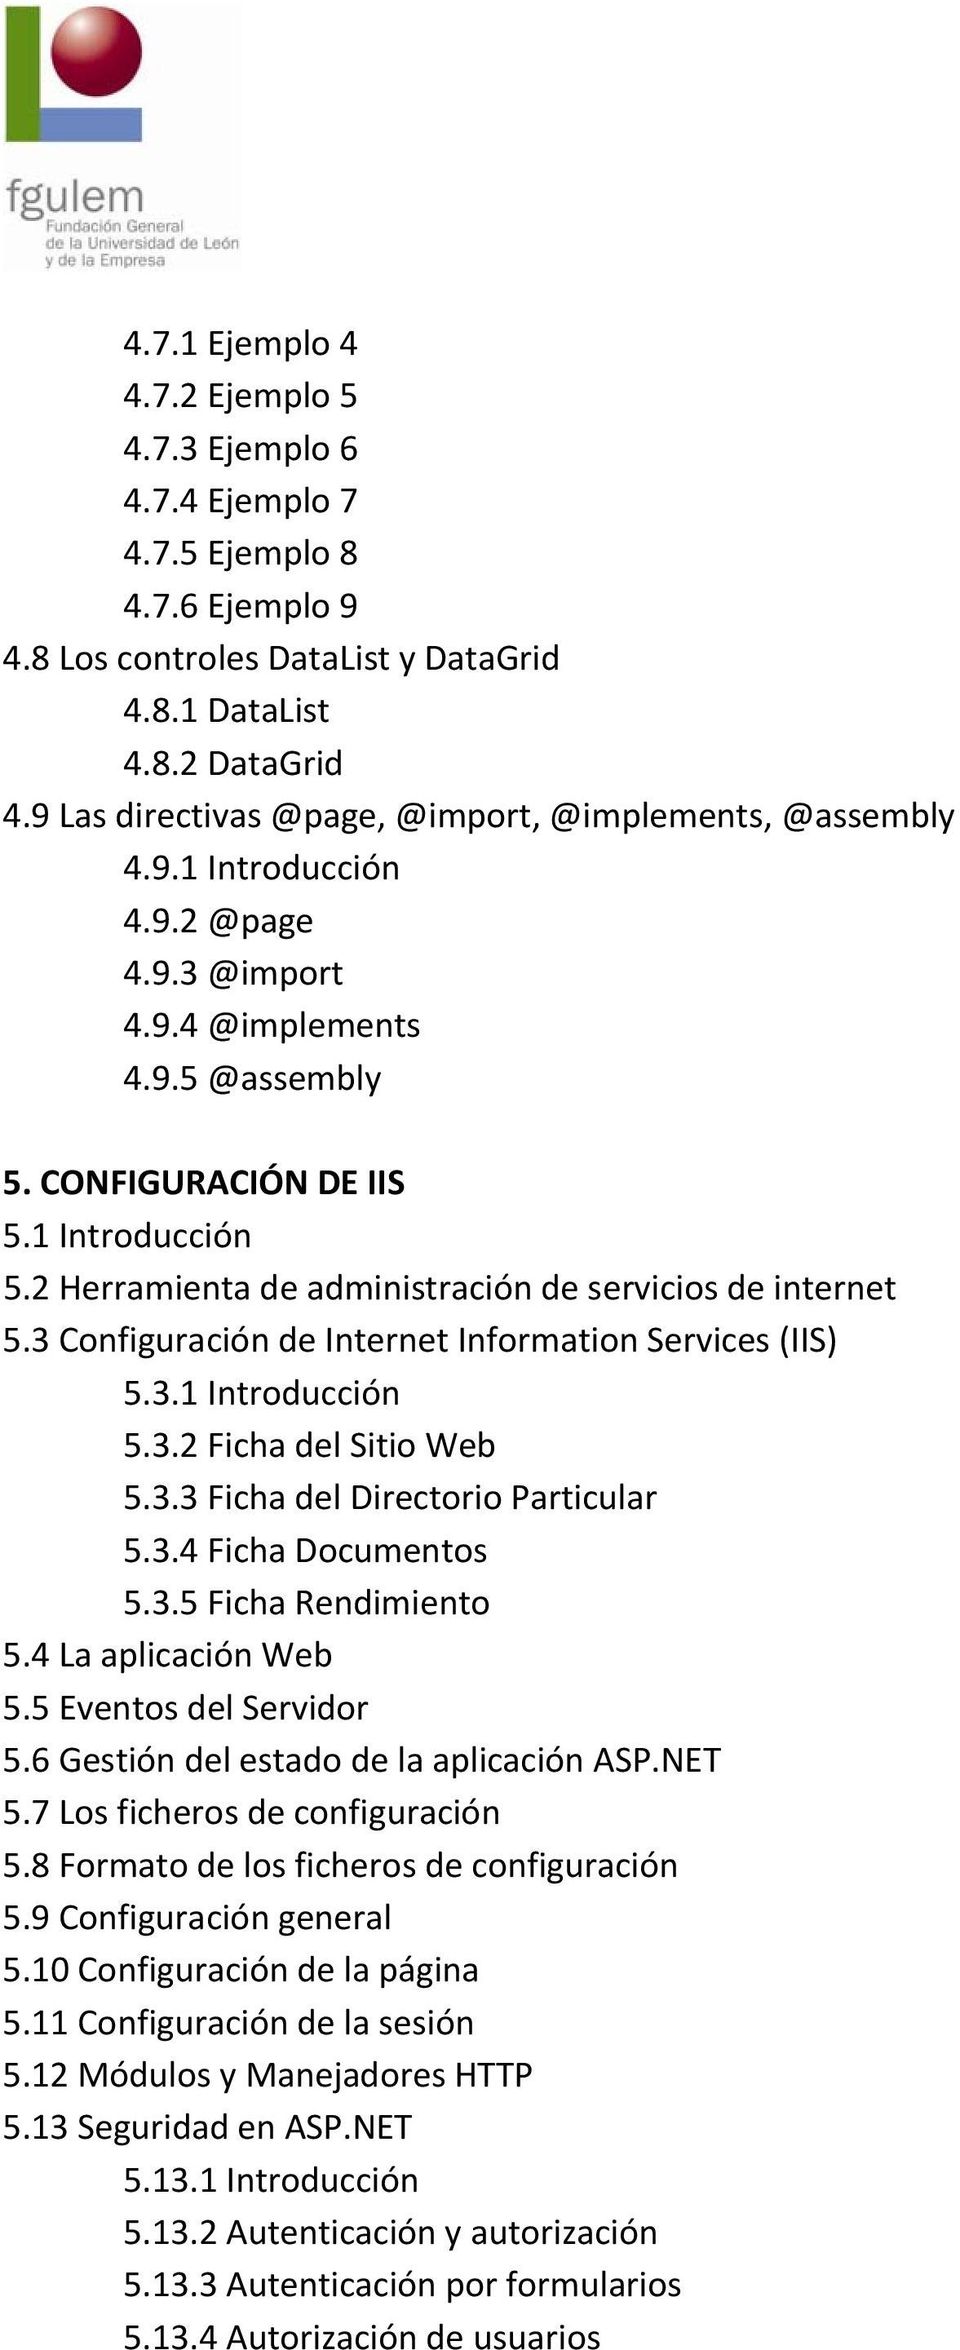 2 Herramienta de administración de servicios de internet 5.3 Configuración de Internet Information Services (IIS) 5.3.1 Introducción 5.3.2 Ficha del Sitio Web 5.3.3 Ficha del Directorio Particular 5.